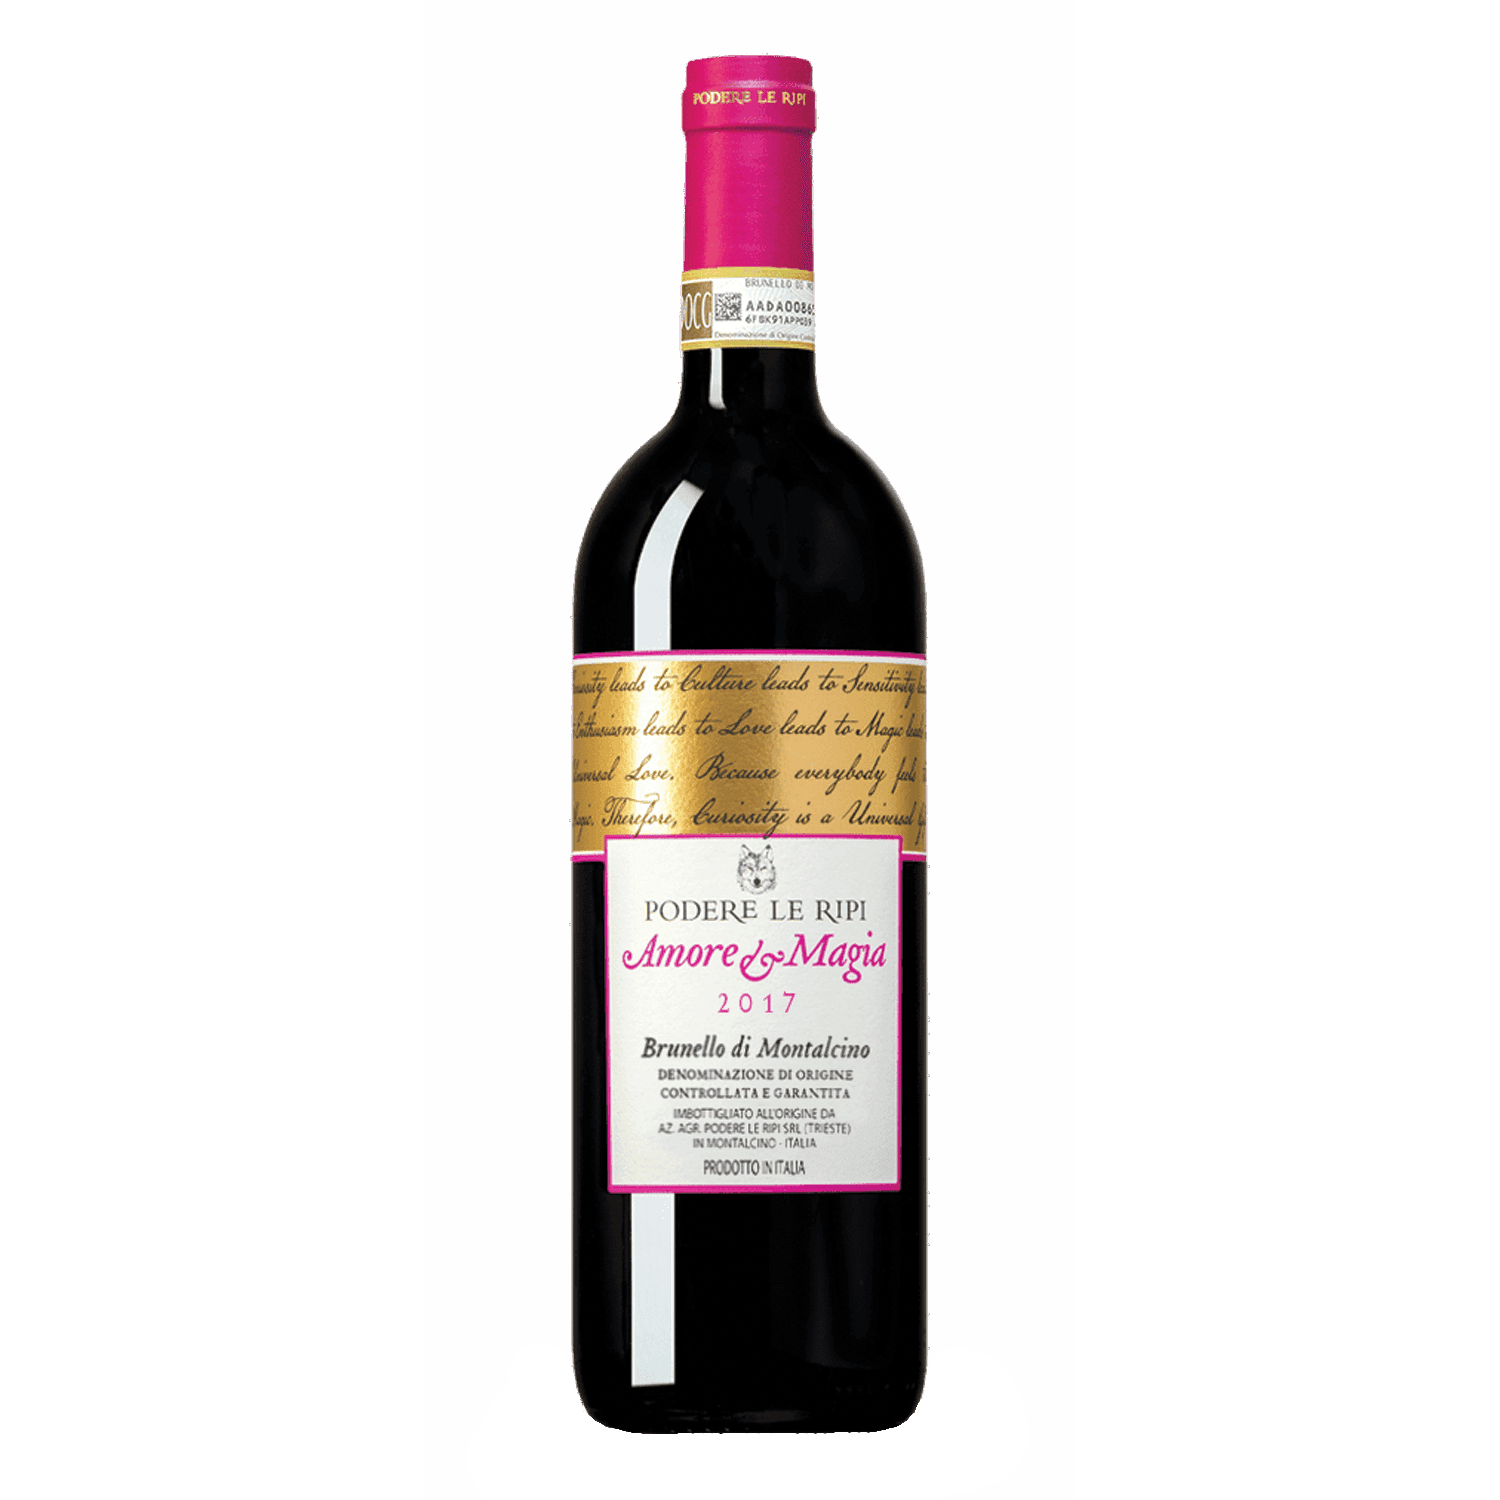 Selected image for PODERE LE RIPI Brunello di Montalcino Amore e Magia Crveno vino, 2017, 0.75l